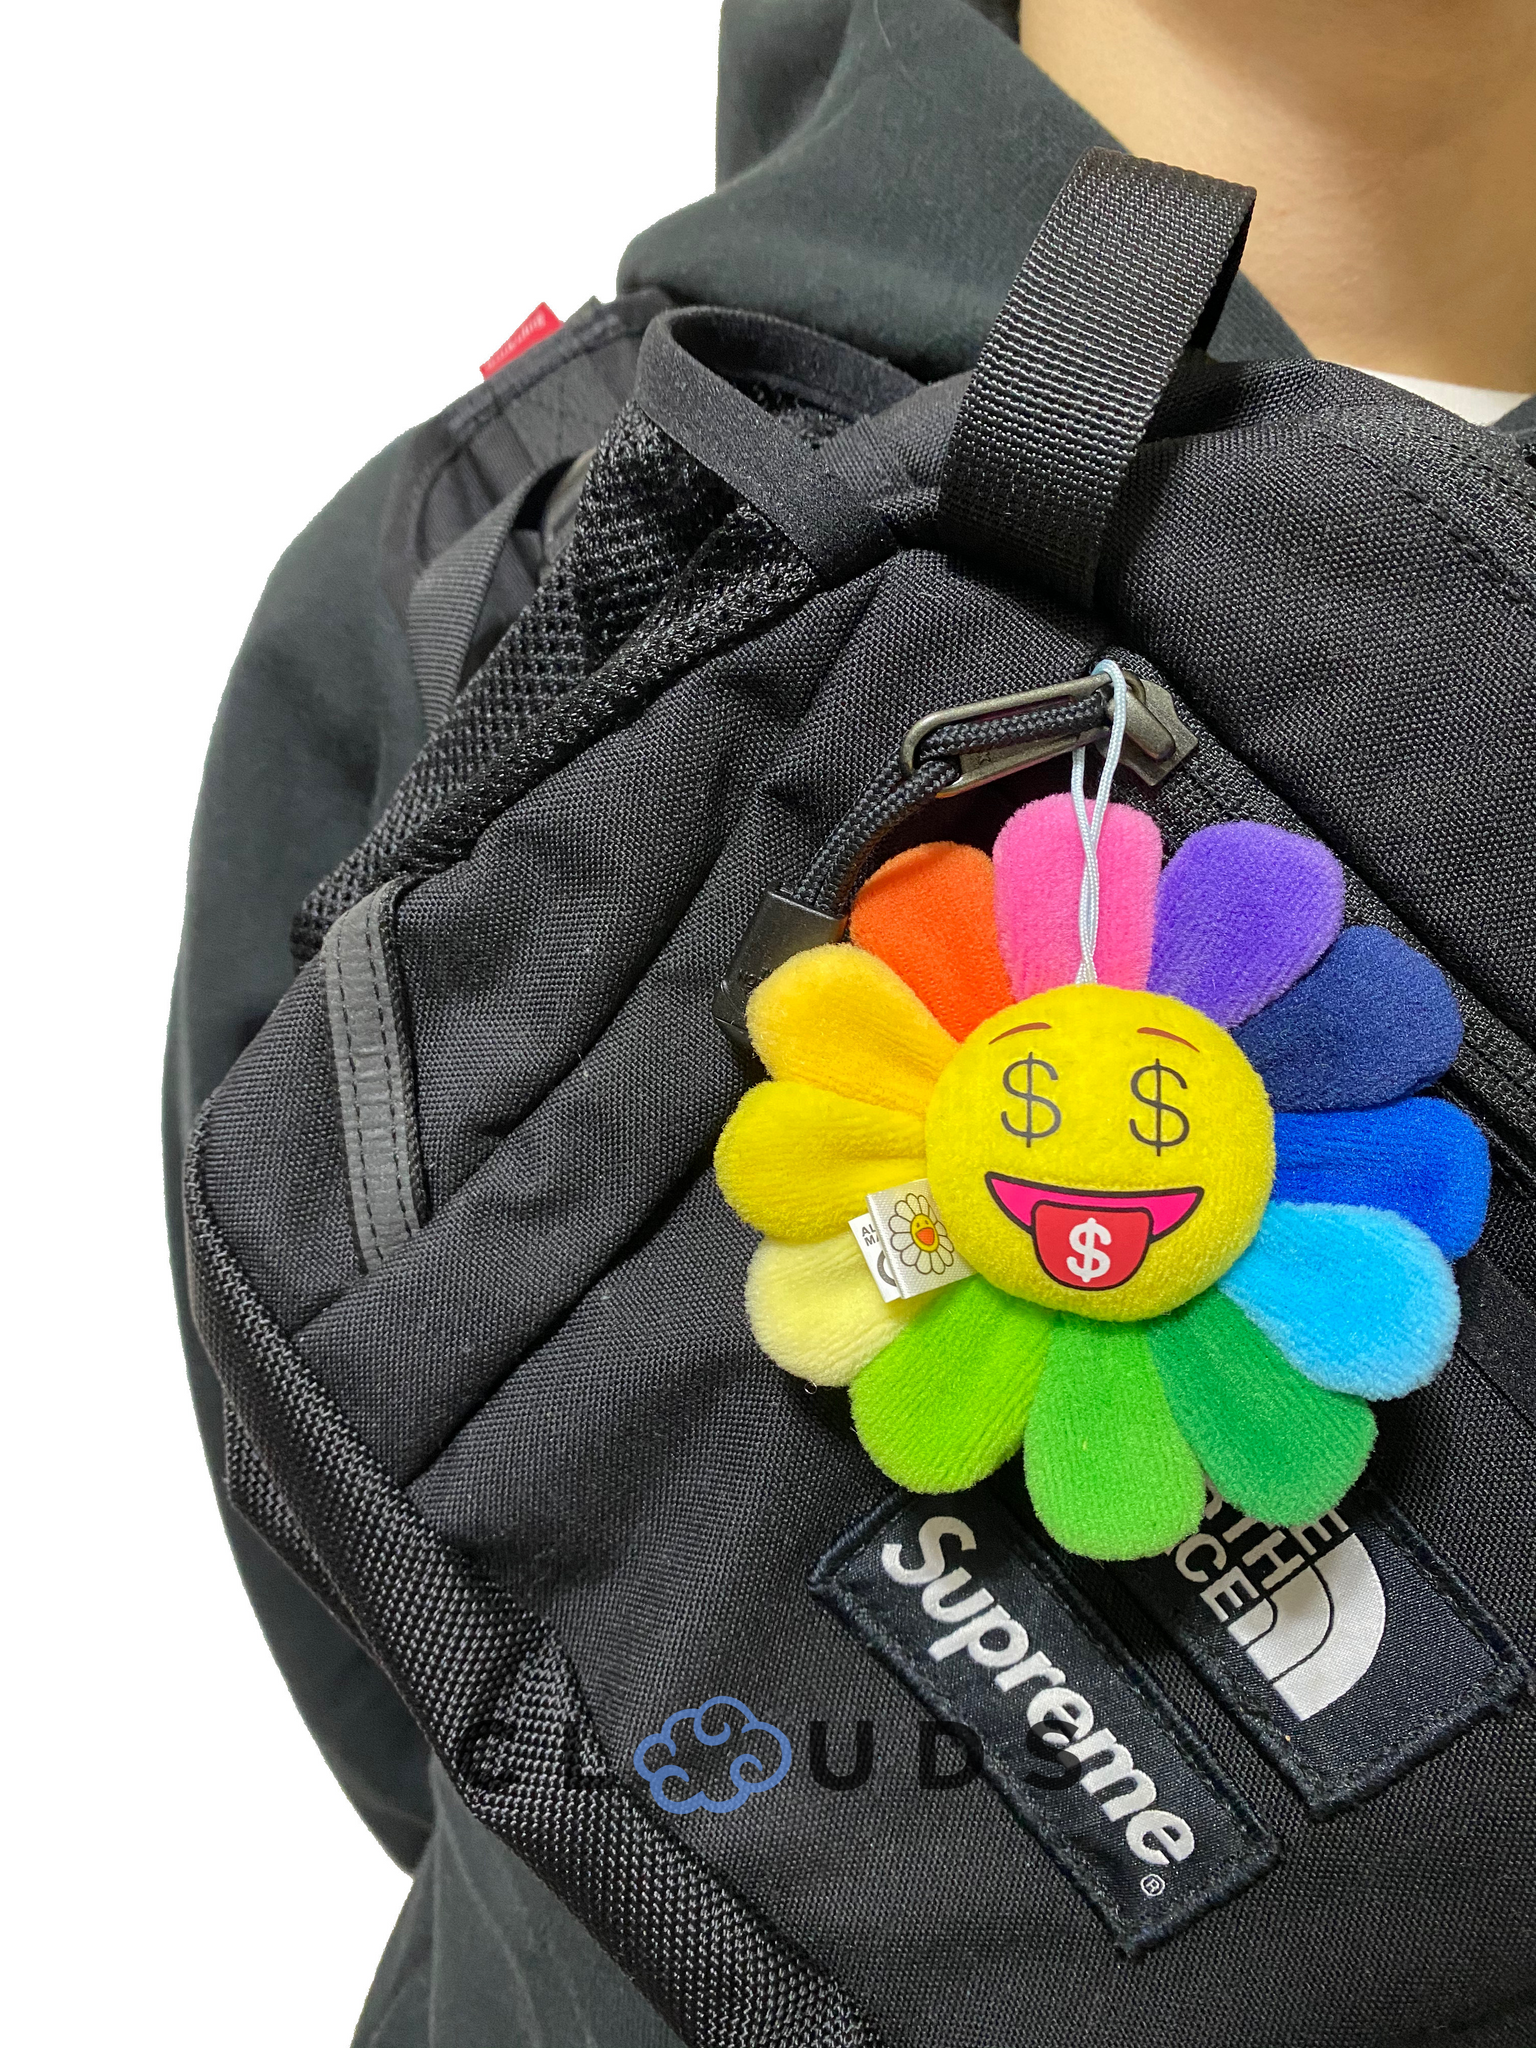 Takashi Murakami Emoji Flower Keychain 'A' – CLOUDS